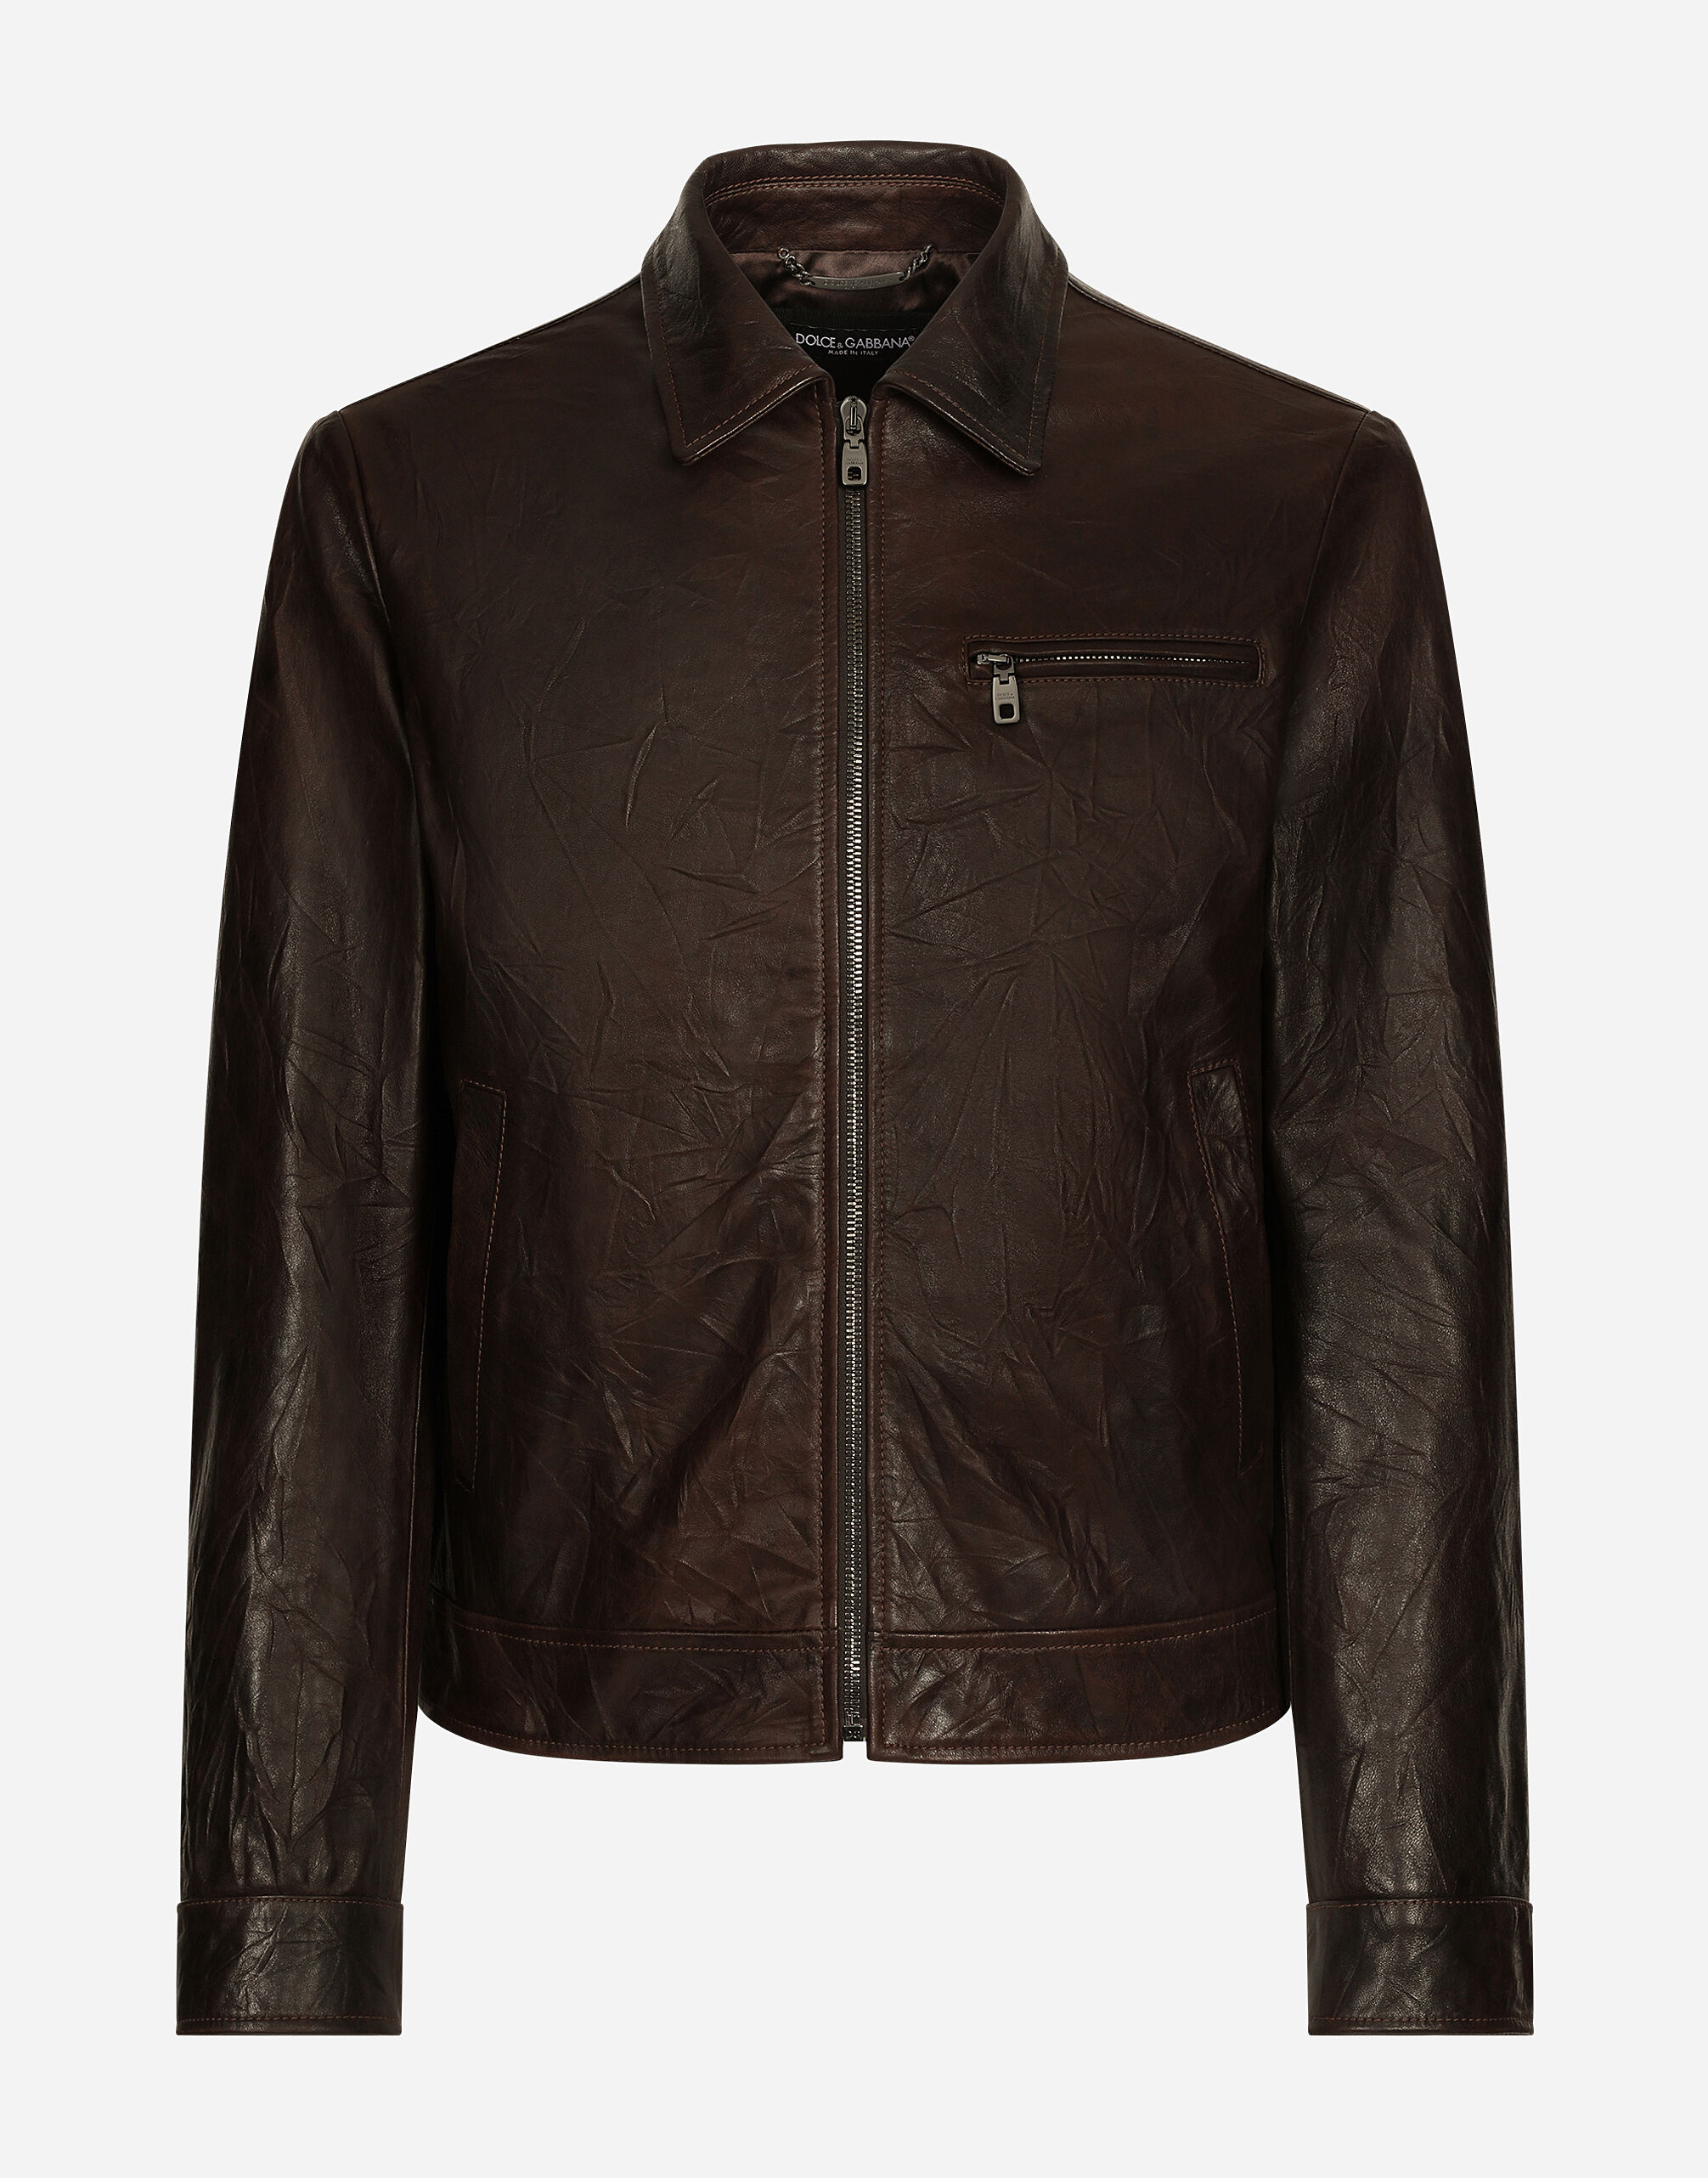 Dolce & Gabbana Leather jacket Print G9BFOTFSSKW